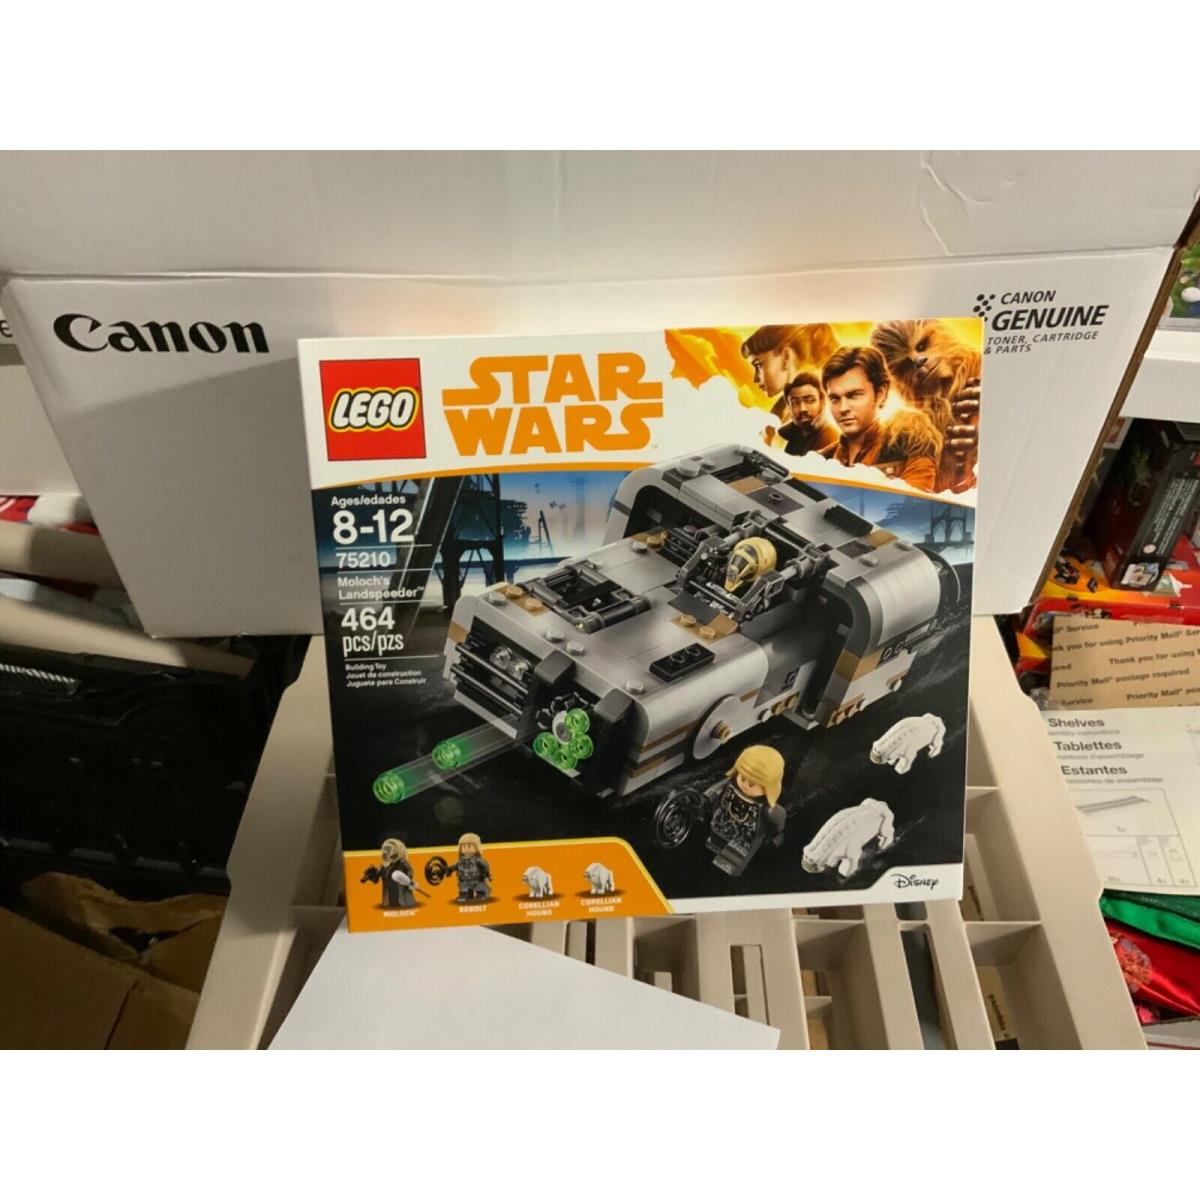 Lego Star Wars Moloch`s Landspeeder 75210 Building Kit 464 Pcs